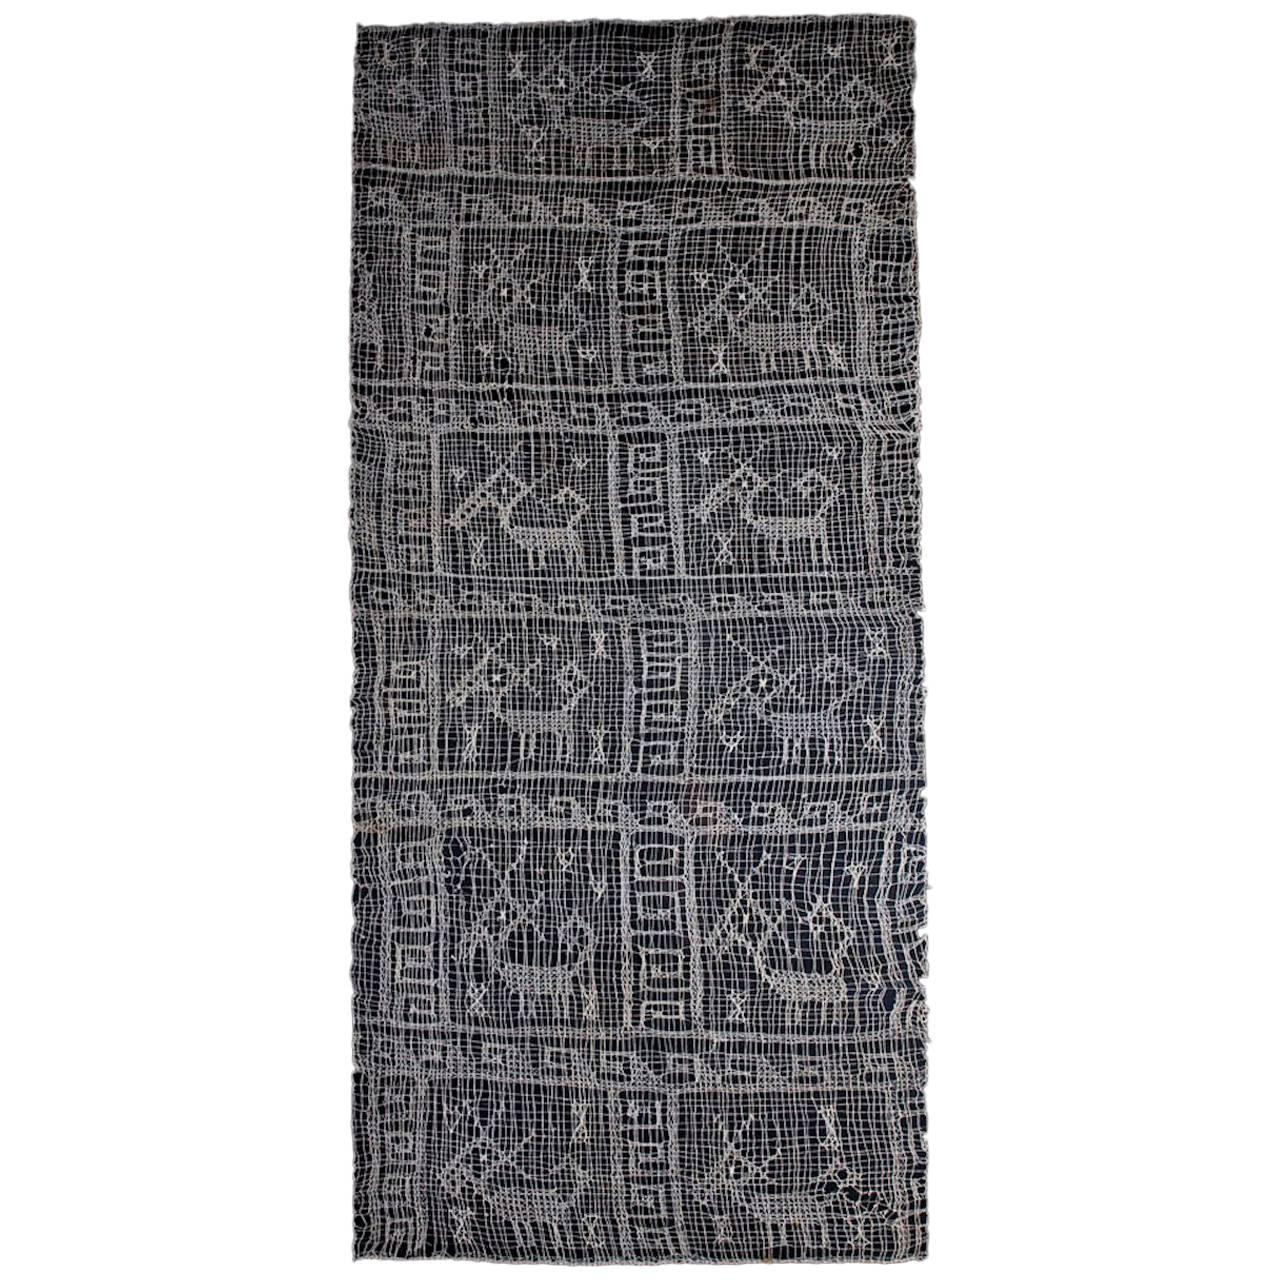 Textile de gaze Pre-Columbian Chancay avec 12 animaux, Ex-Kate Kemper